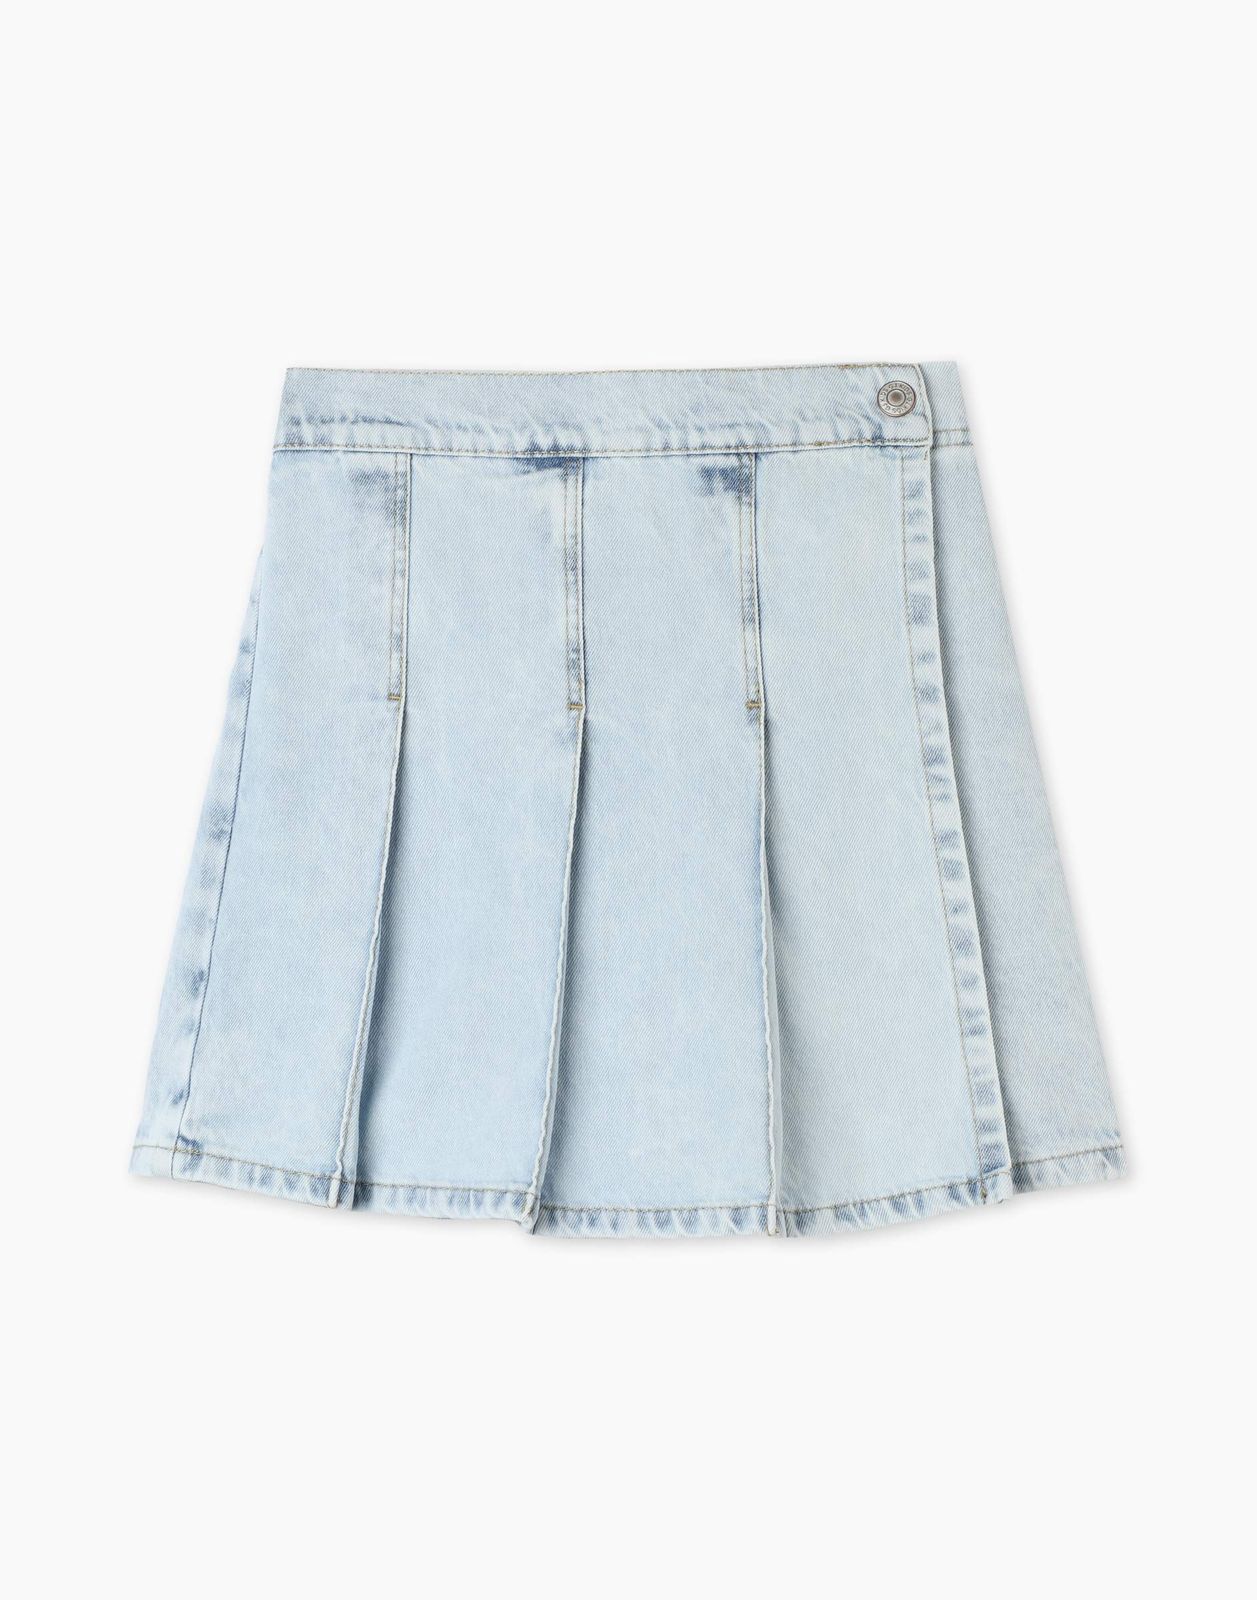 Джинсовая юбка-шорты Gloria Jeans GSK018325 8-10л/134-140 для девочки